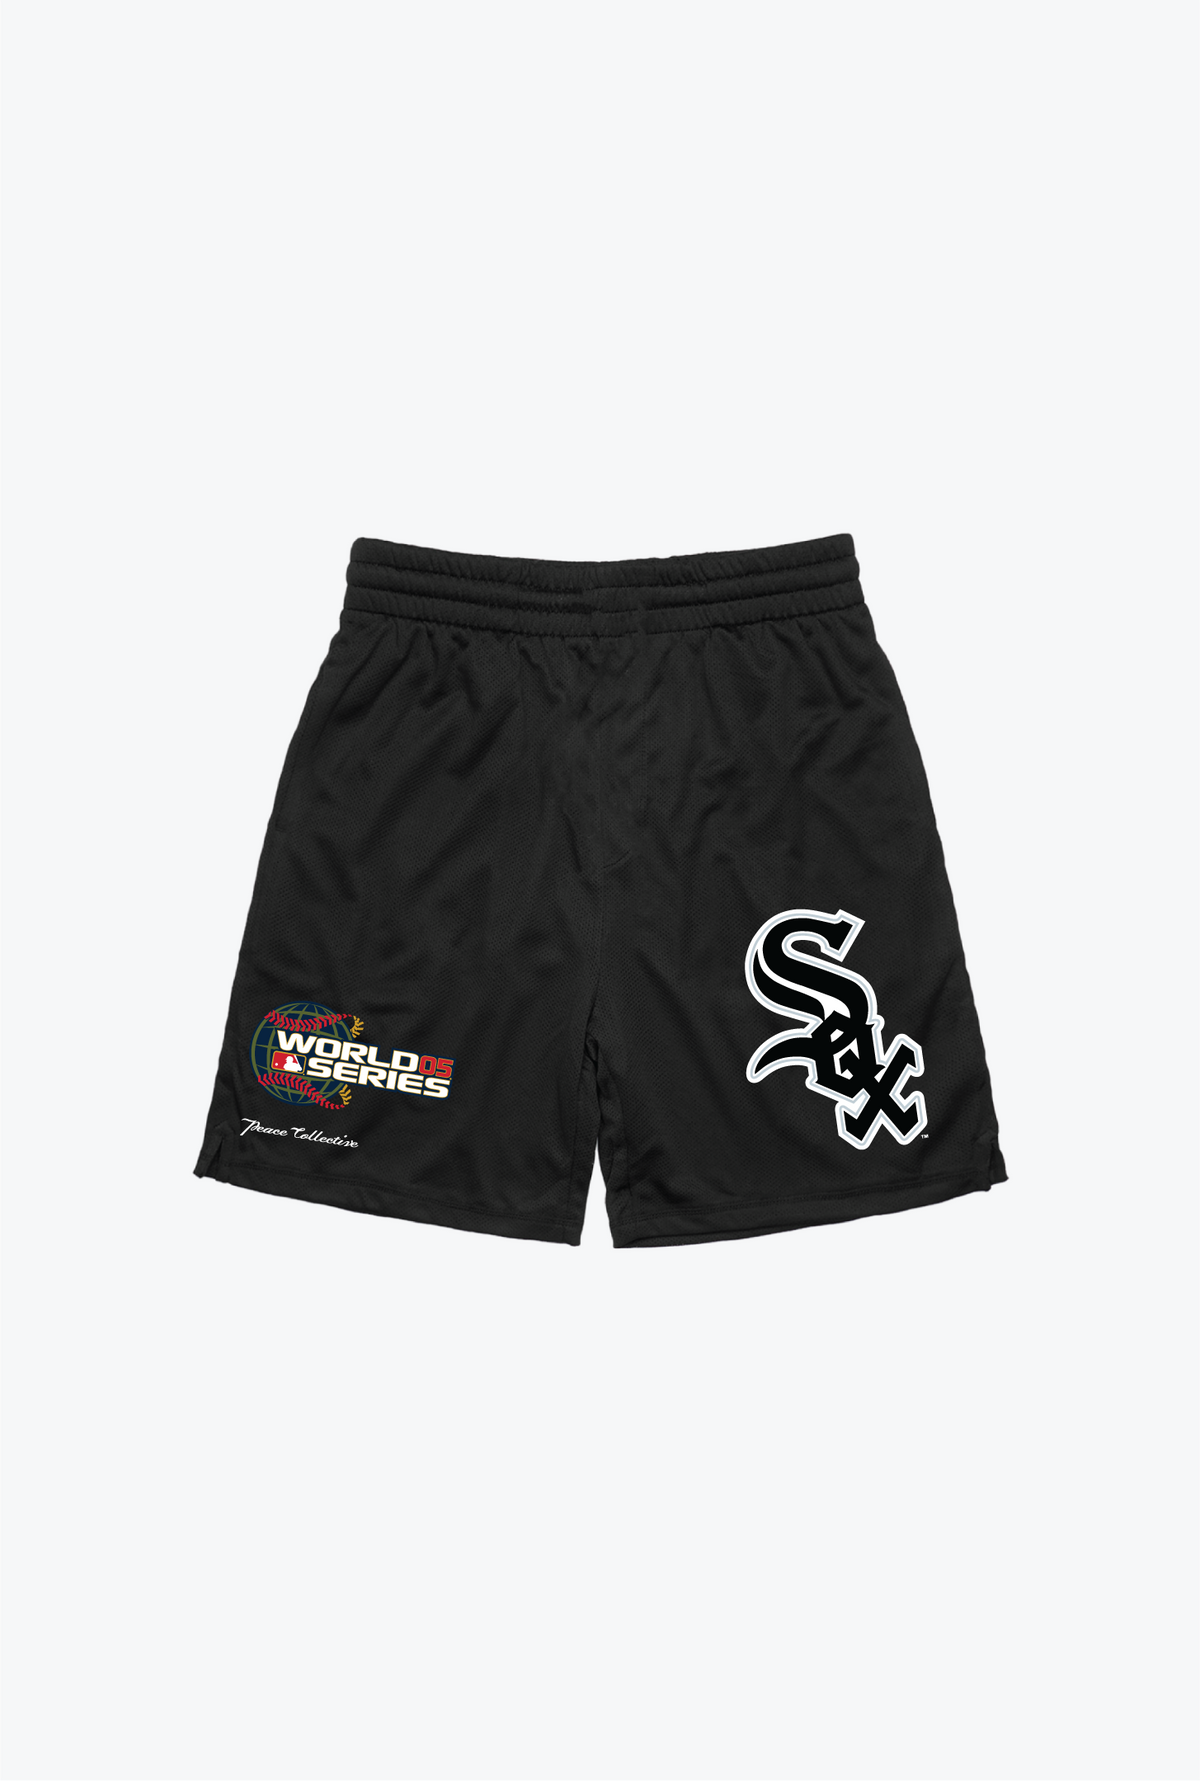 Chicago White Sox 2005 World Series Mesh Shorts - Black